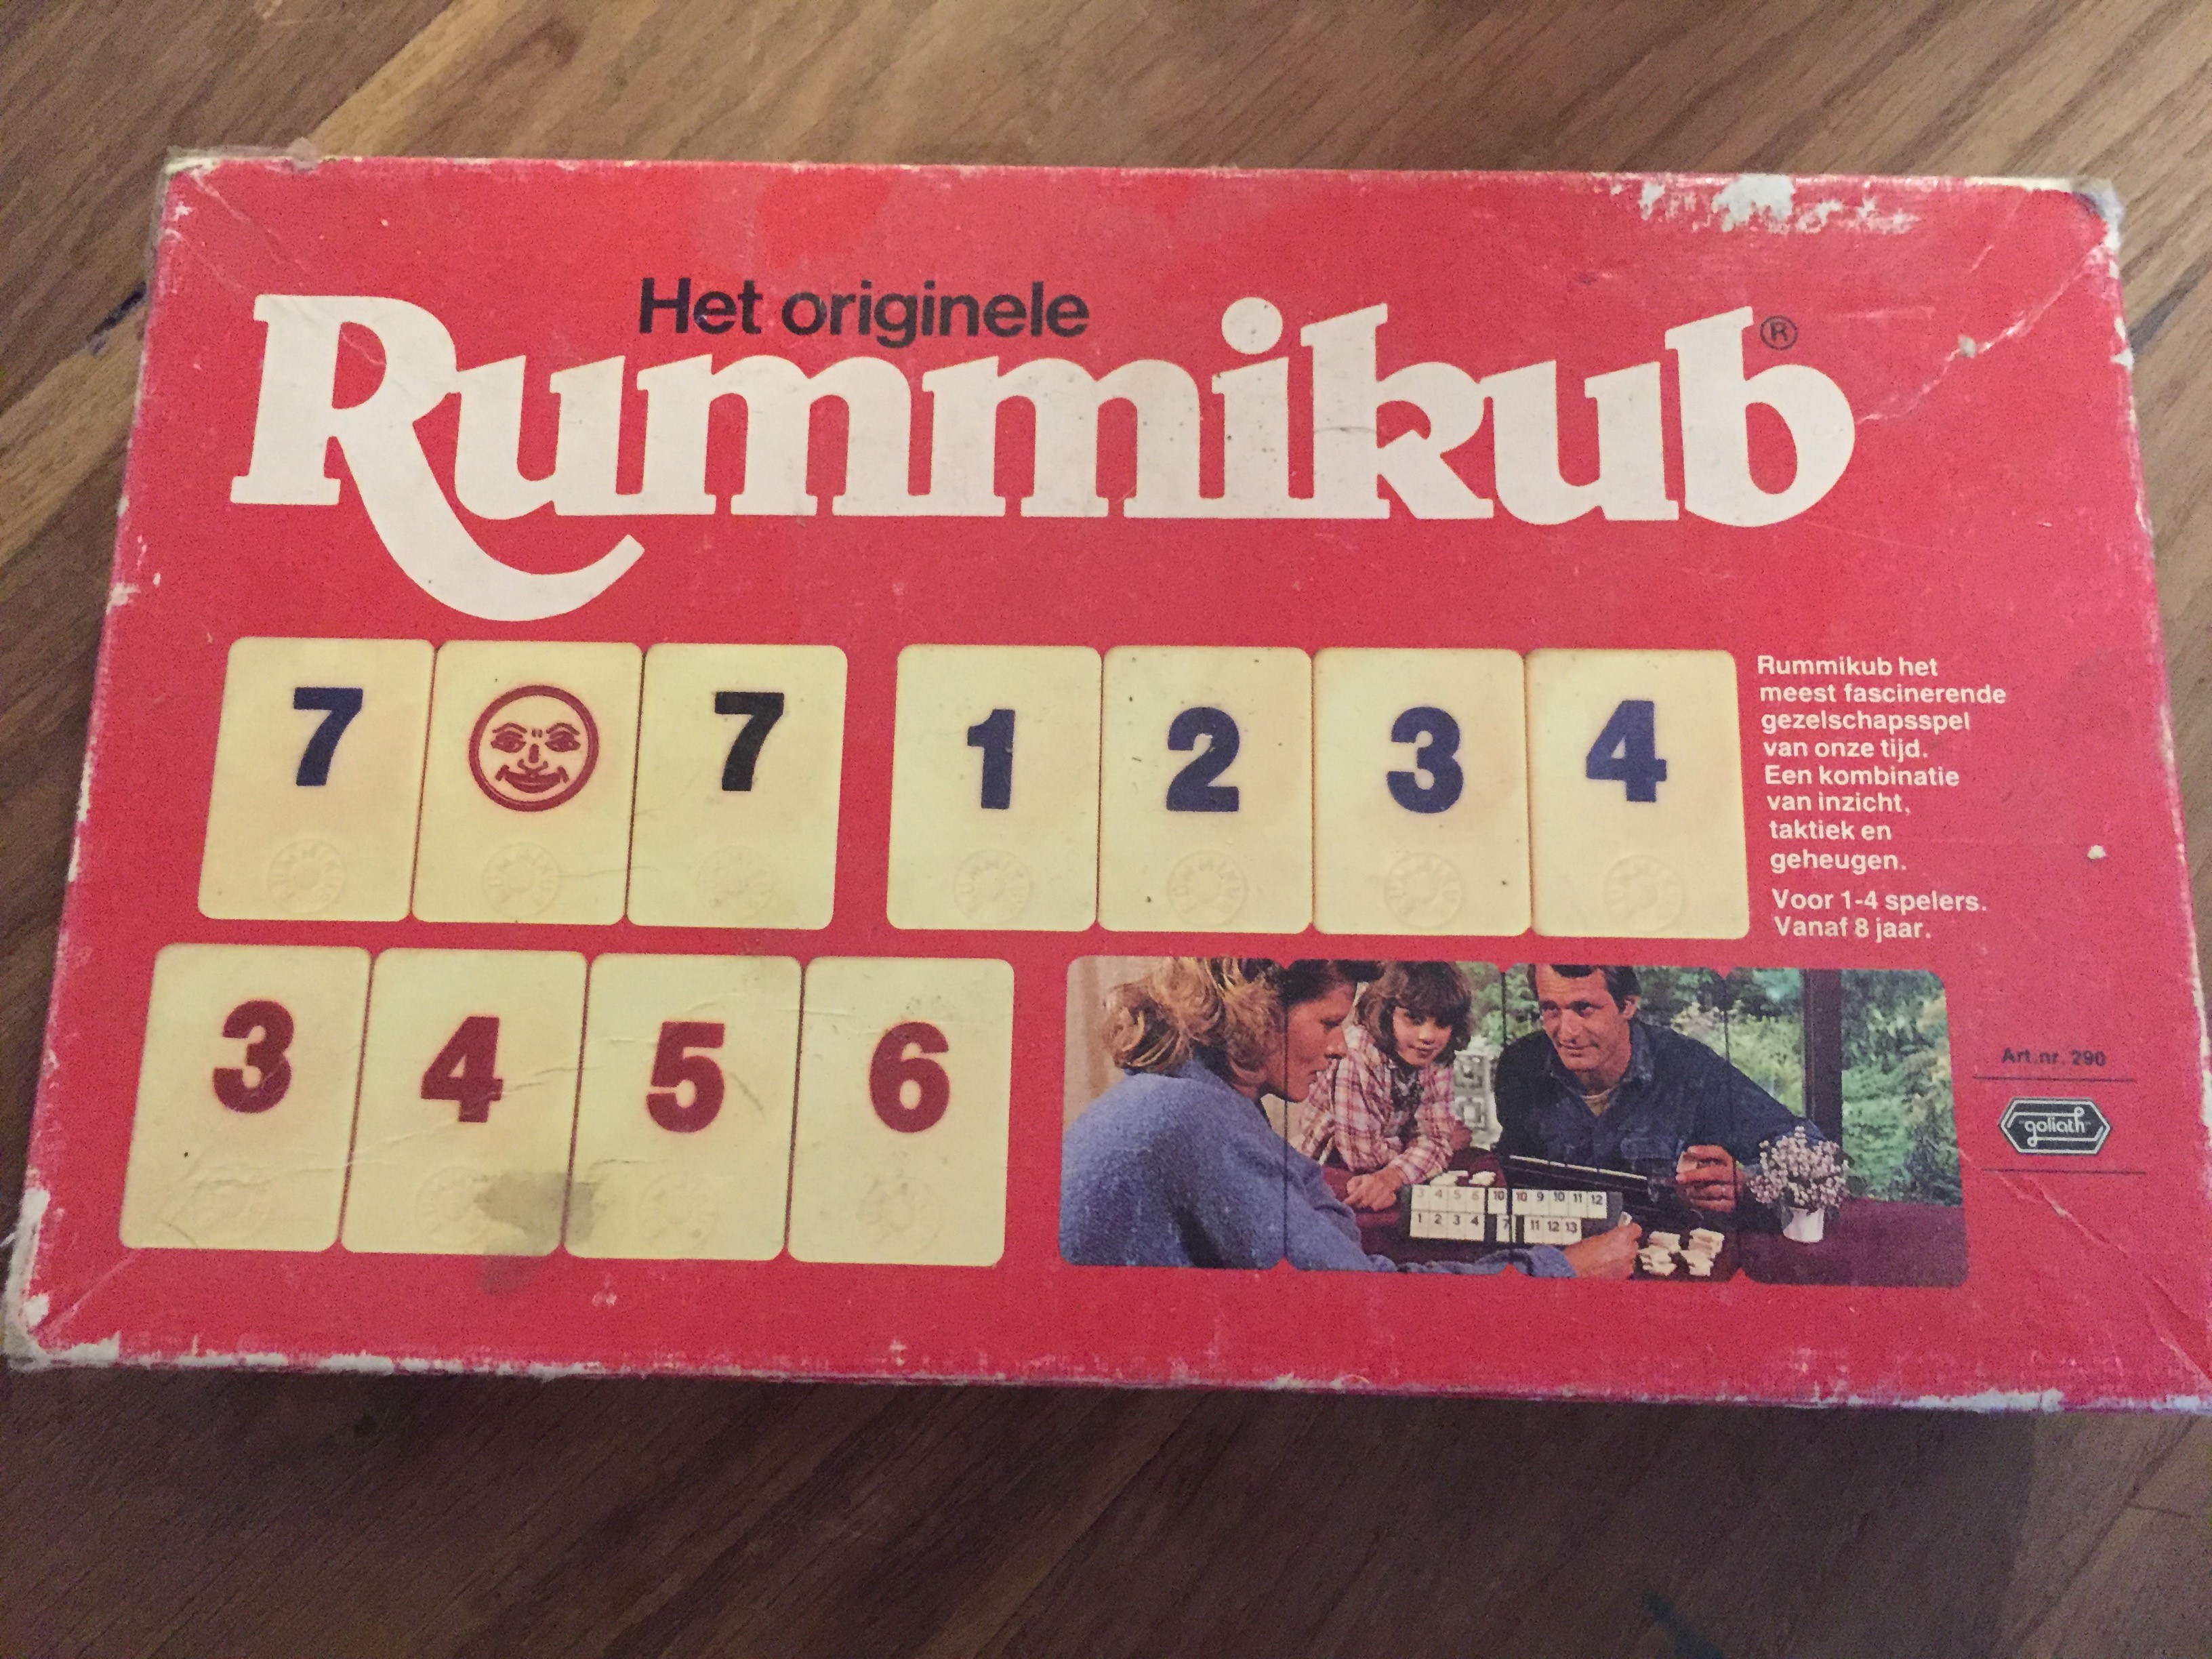 Ja hoor, Rummikub! Origineel uit de jaren 80 en het blijft leuk!